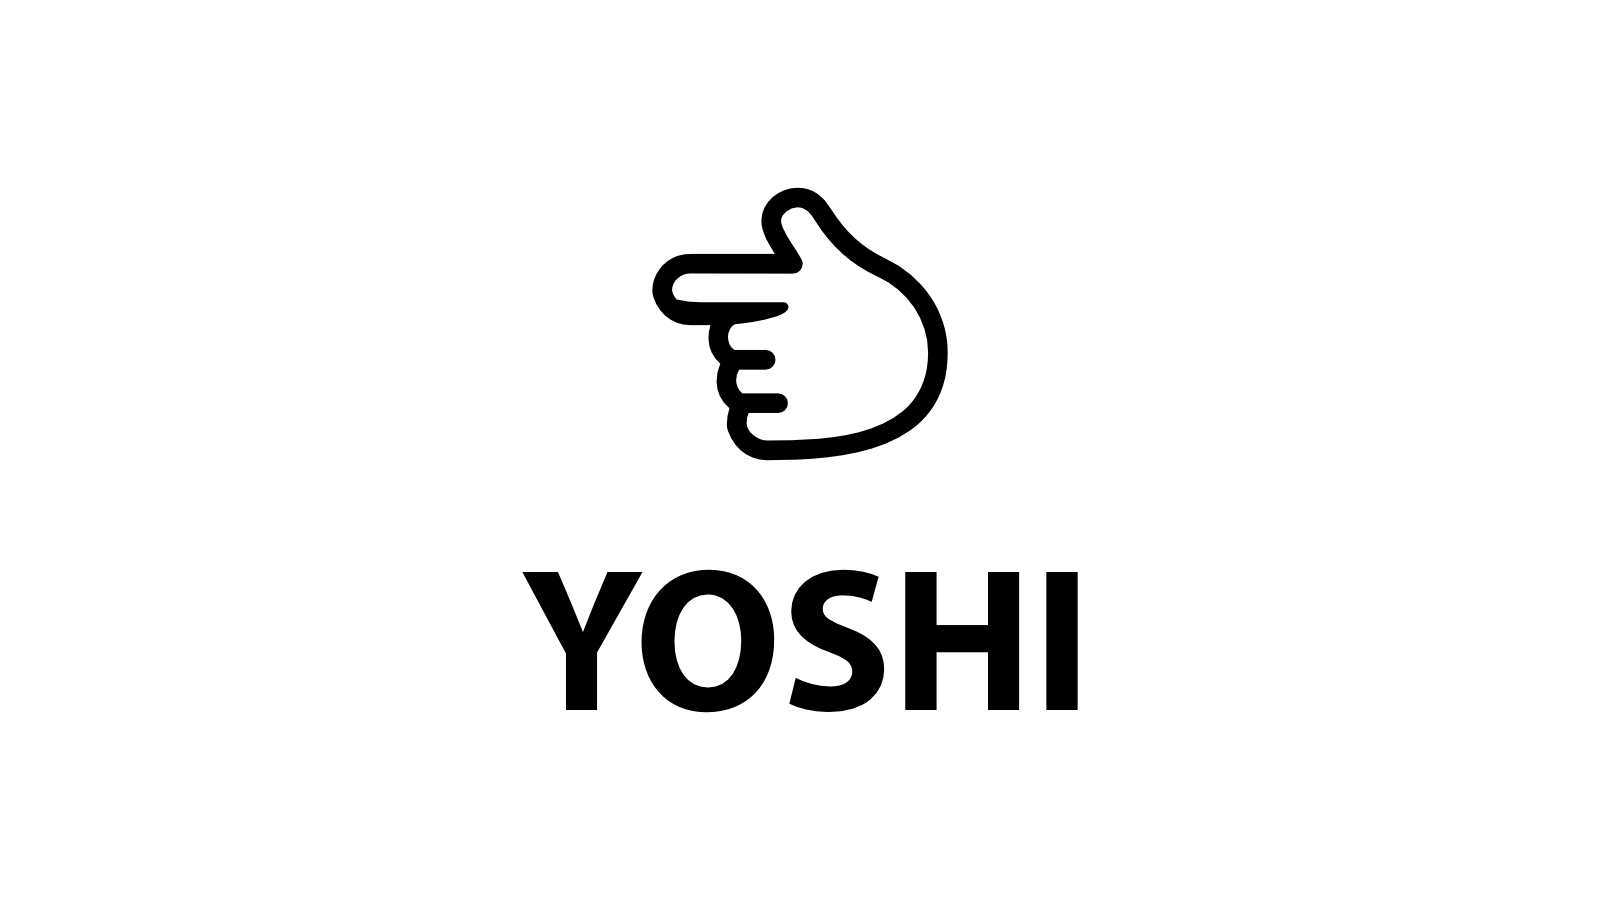 YOSHI